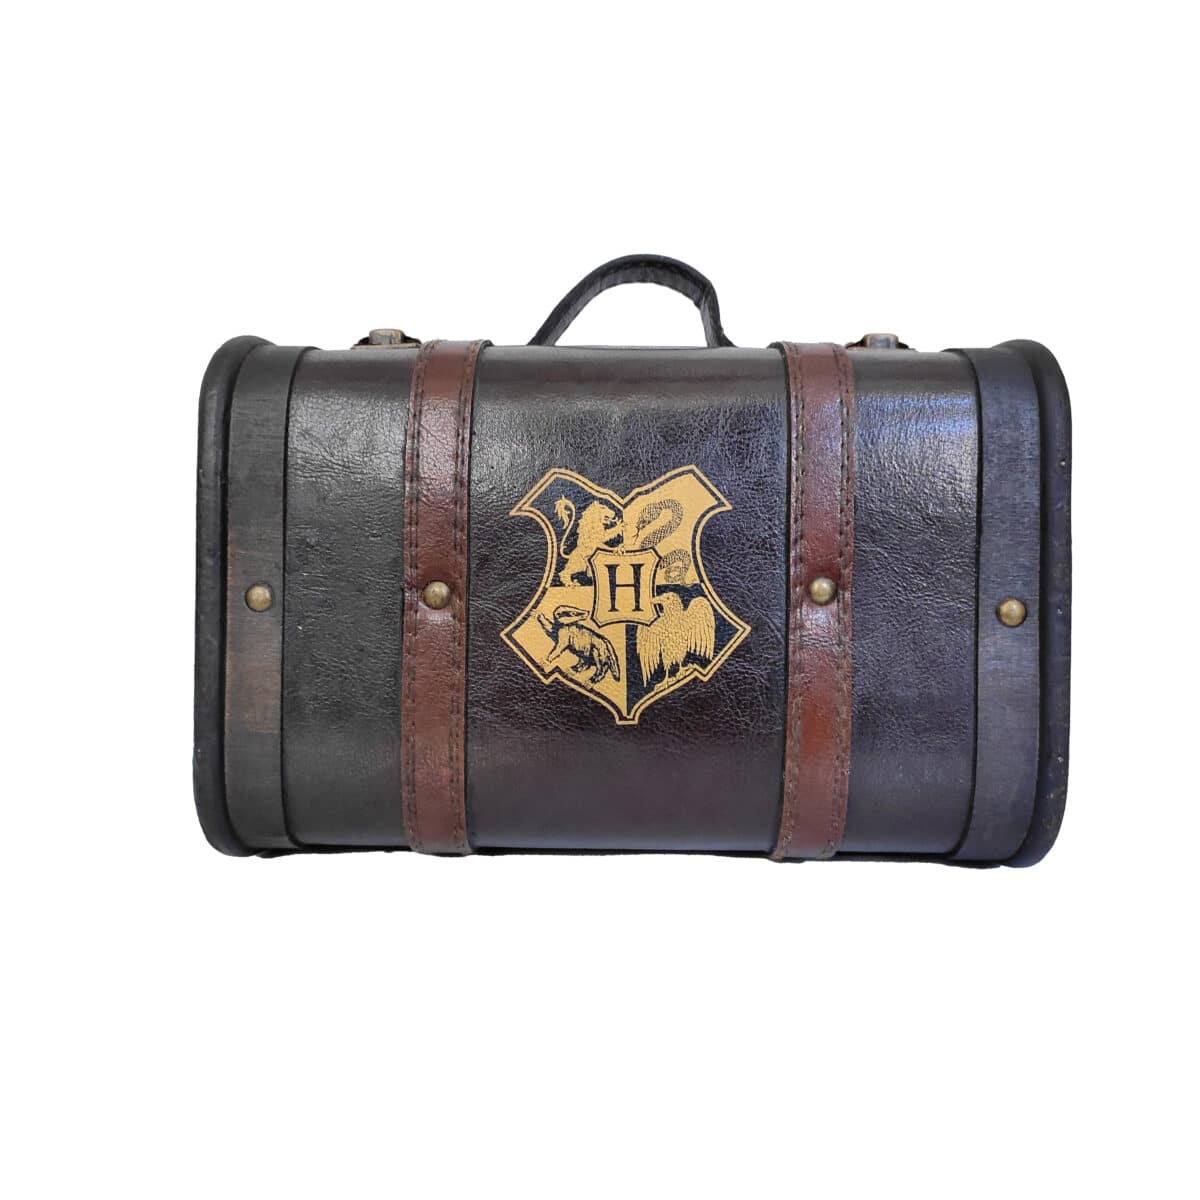 Harry Potter Hogwarts Messenger Bag